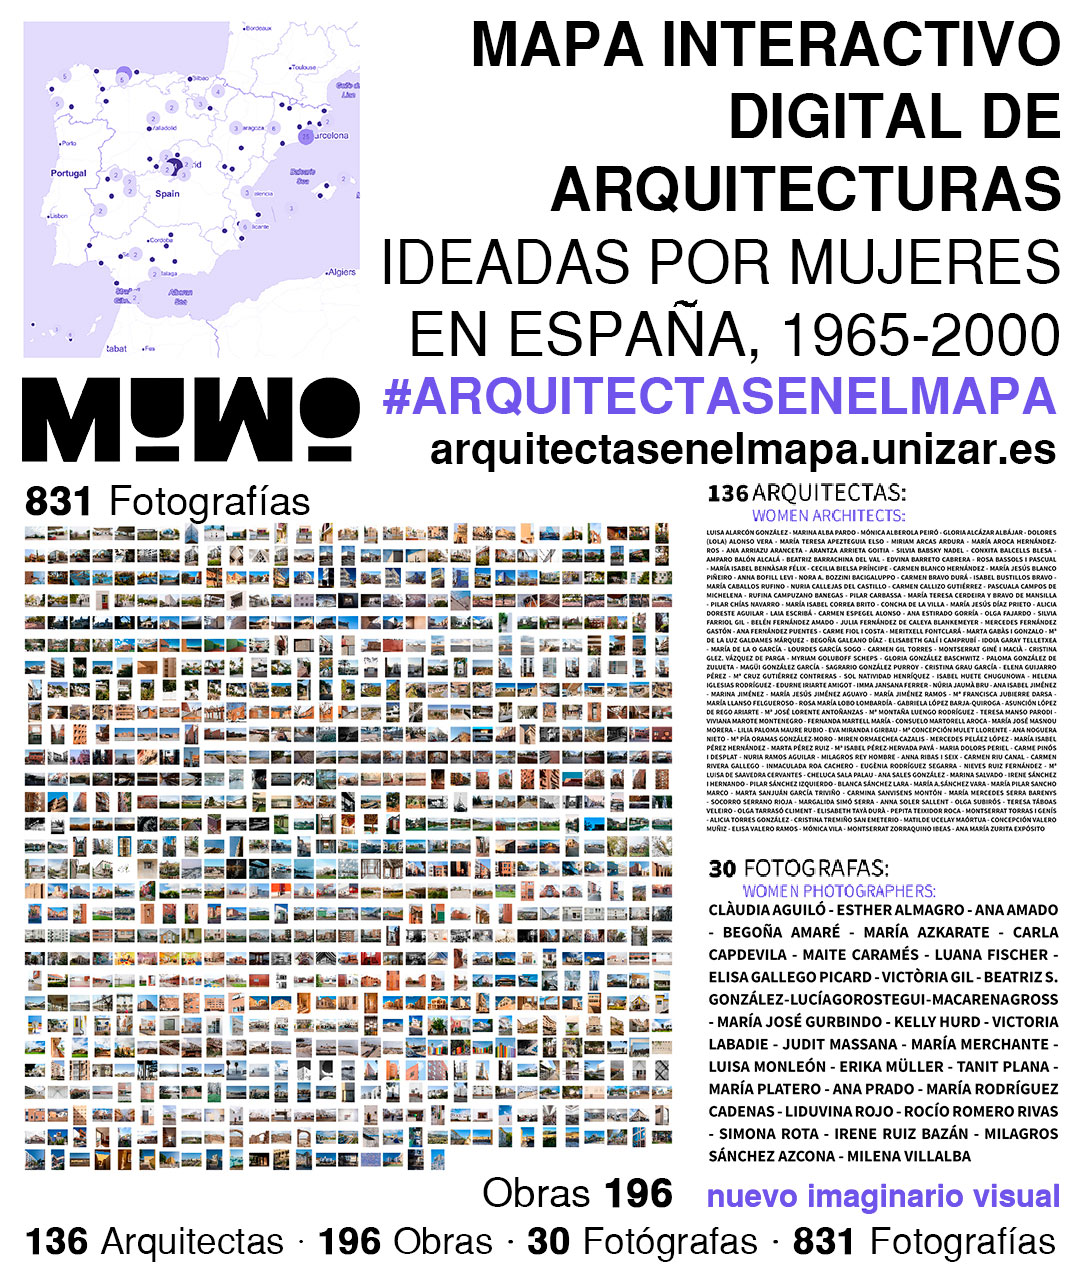 Arquitectas en el Mapa, de MuWo, plataforma interactiva digital de arquitecturas ideadas por mujeres en España entre 1965 y 2000